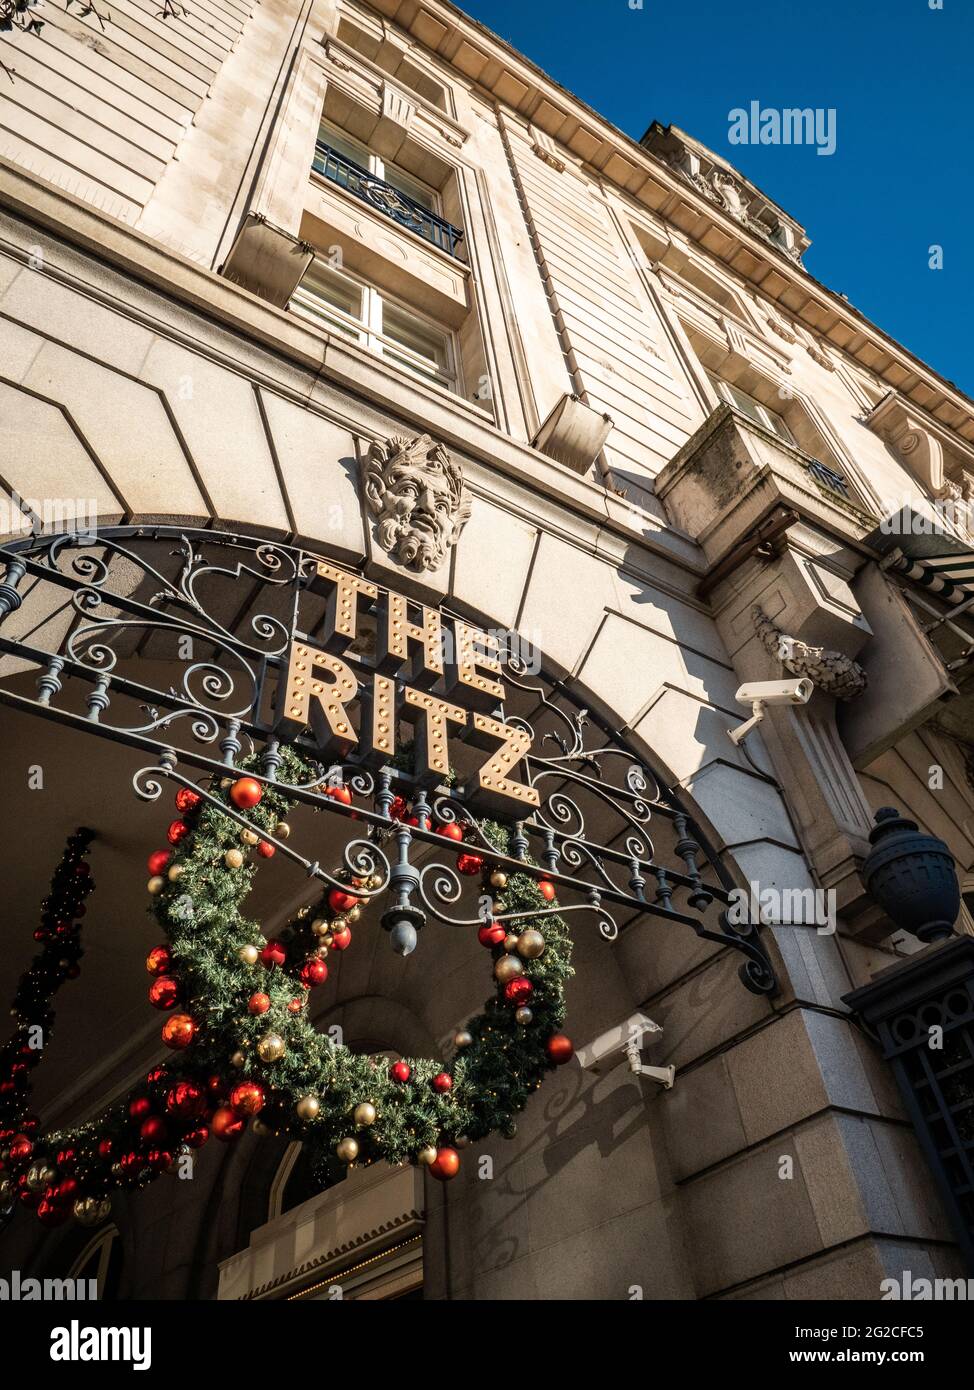 The Ritz Hotel, Mayfair, Londres. El icónico hotel de 5 estrellas de categoría II en Piccadilly, que se ha convertido en sinónimo de alta sociedad y lujo. Foto de stock